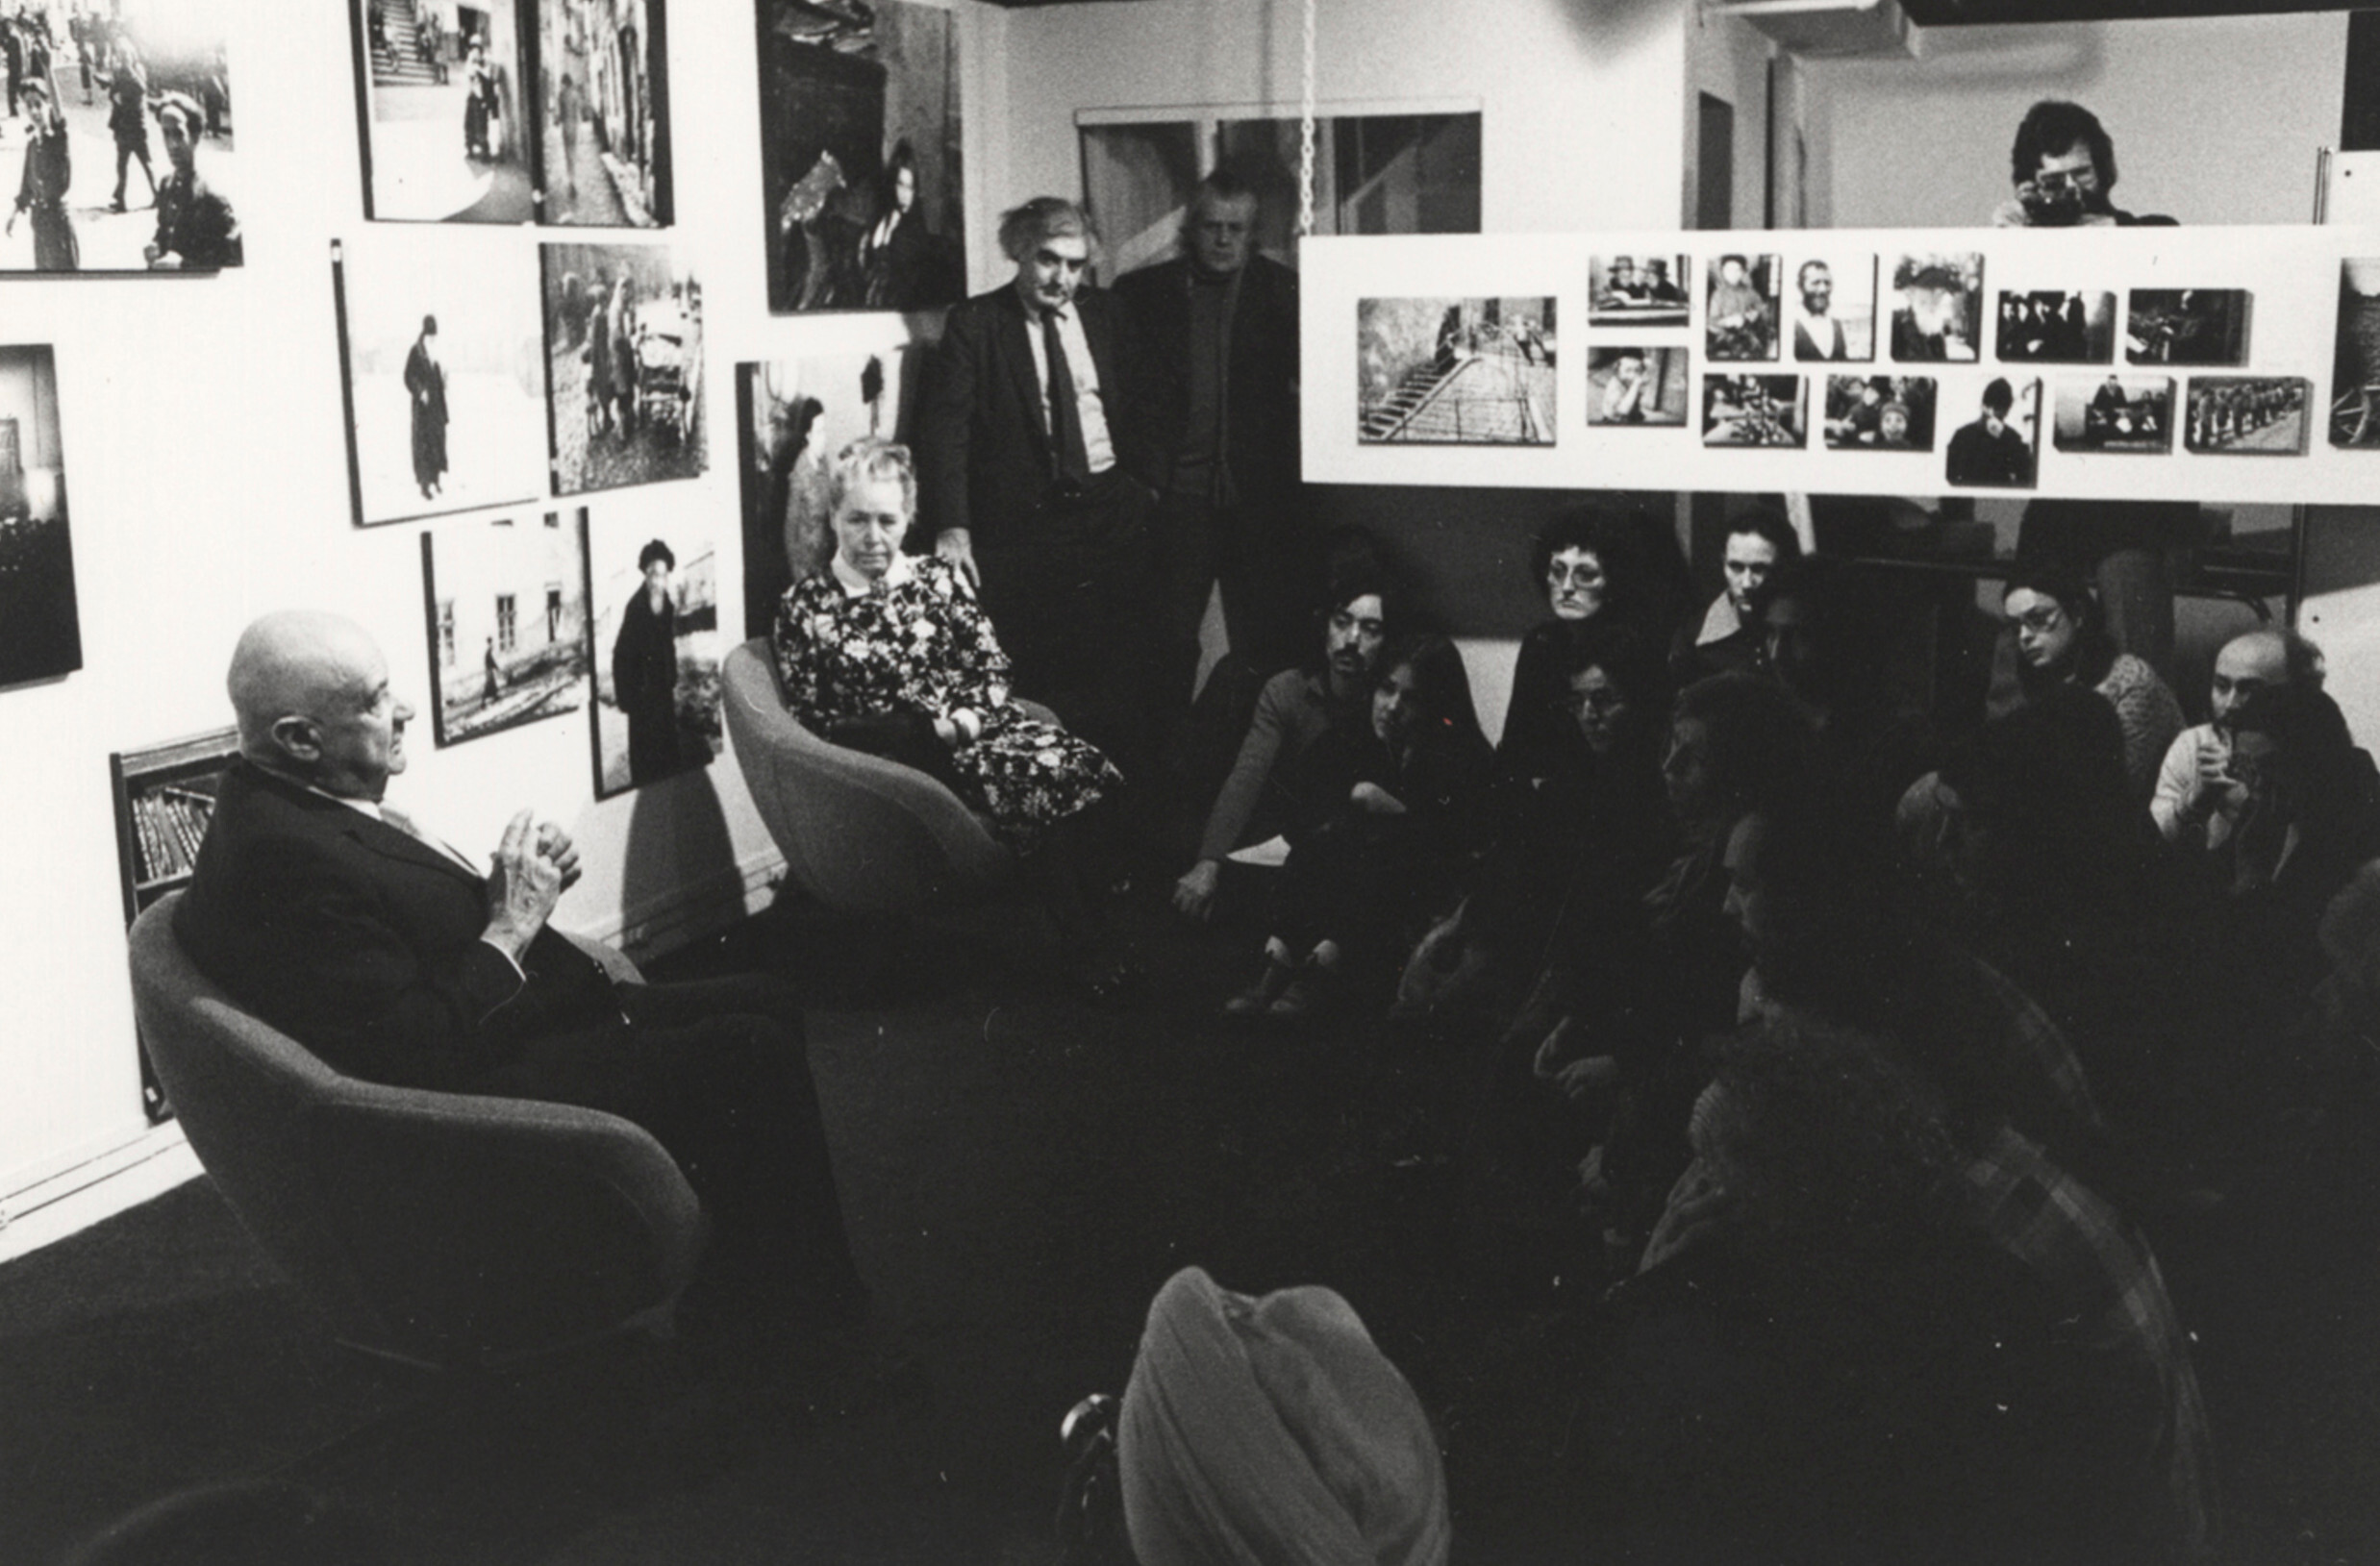 Роман и Эдит Вишняк с Корнеллом Капой (стоит) отвечают на вопросы на выставке The Concerned Photographer, Международный центр фотографии, Нью-Йорк, 1973 г. Фотограф Роман Вишняк